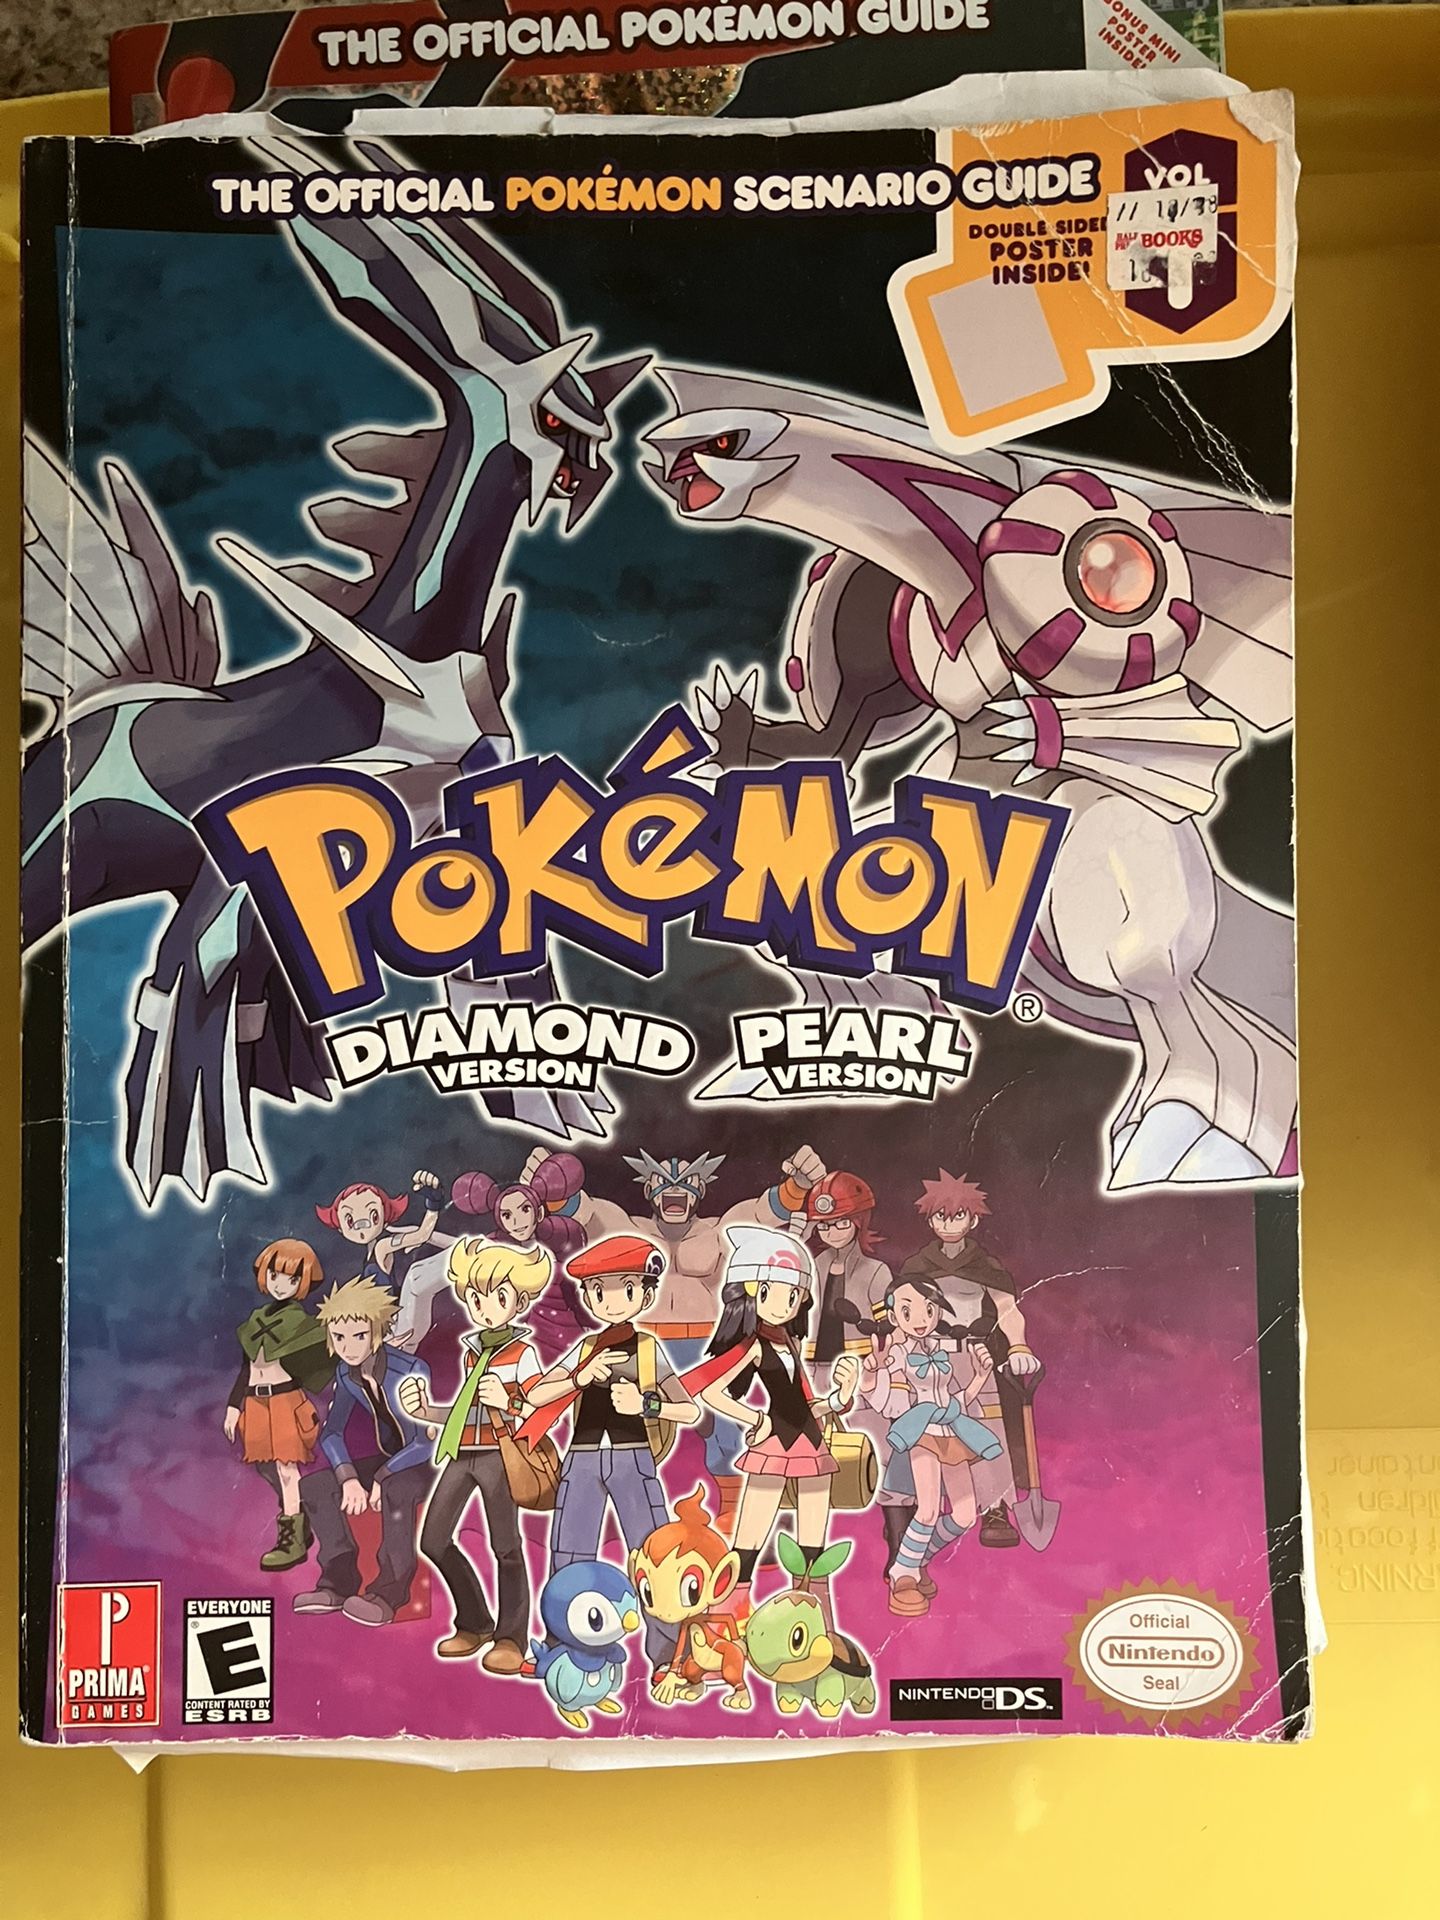 Pokémon D&P Guidebook 